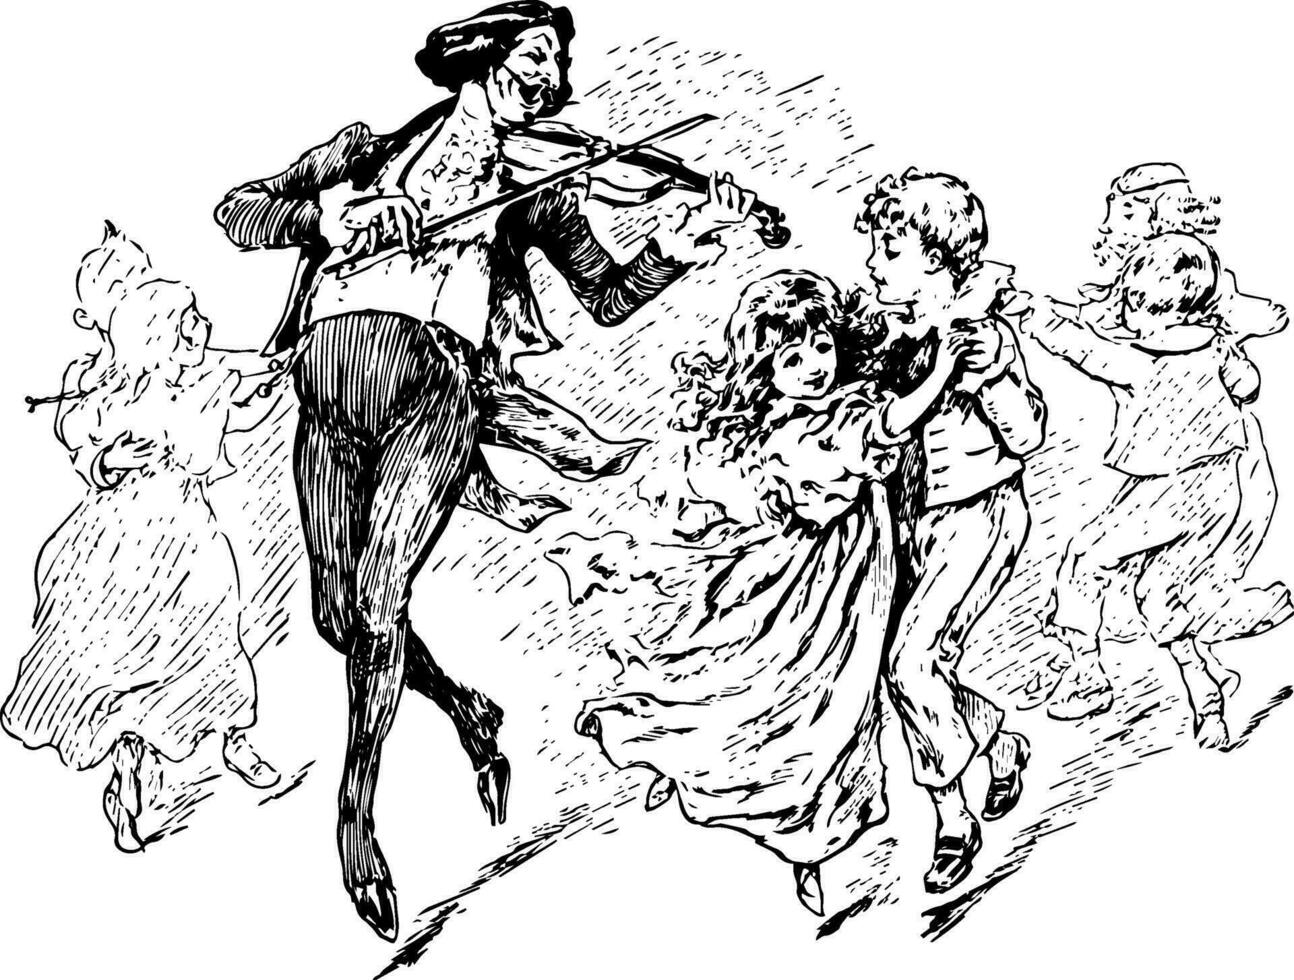 Mann spielen Violine mit Kinder Tanzen, nahrhaft Gefühl von Liebe, Jahrgang Gravur. vektor